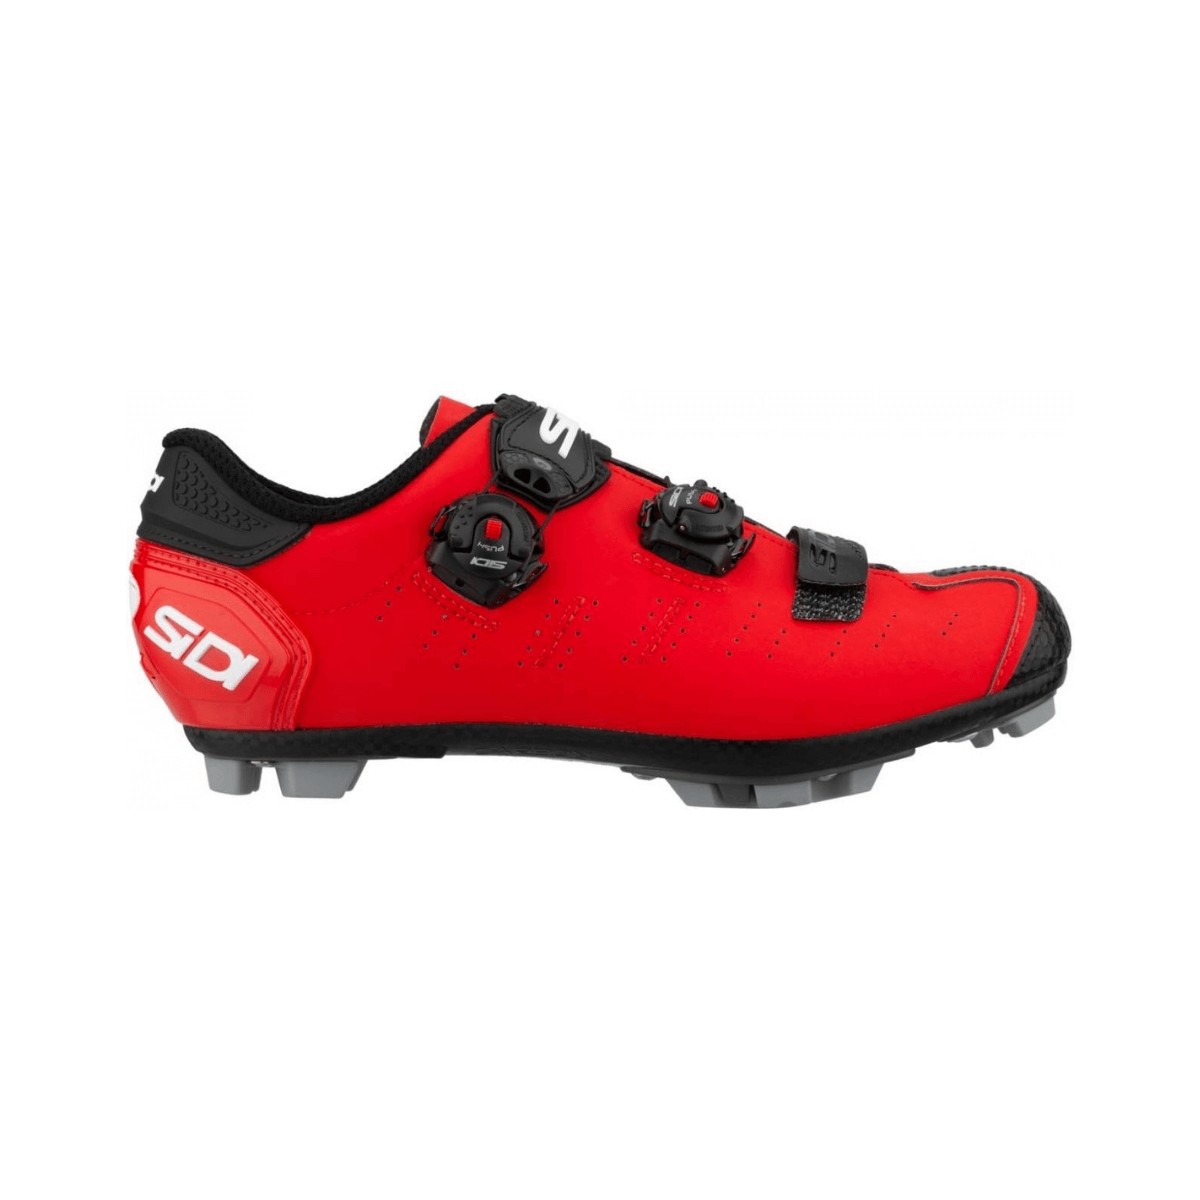 Sidi Dragon 5 MTB Shoes Red Black Matte, Size 47 - EUR